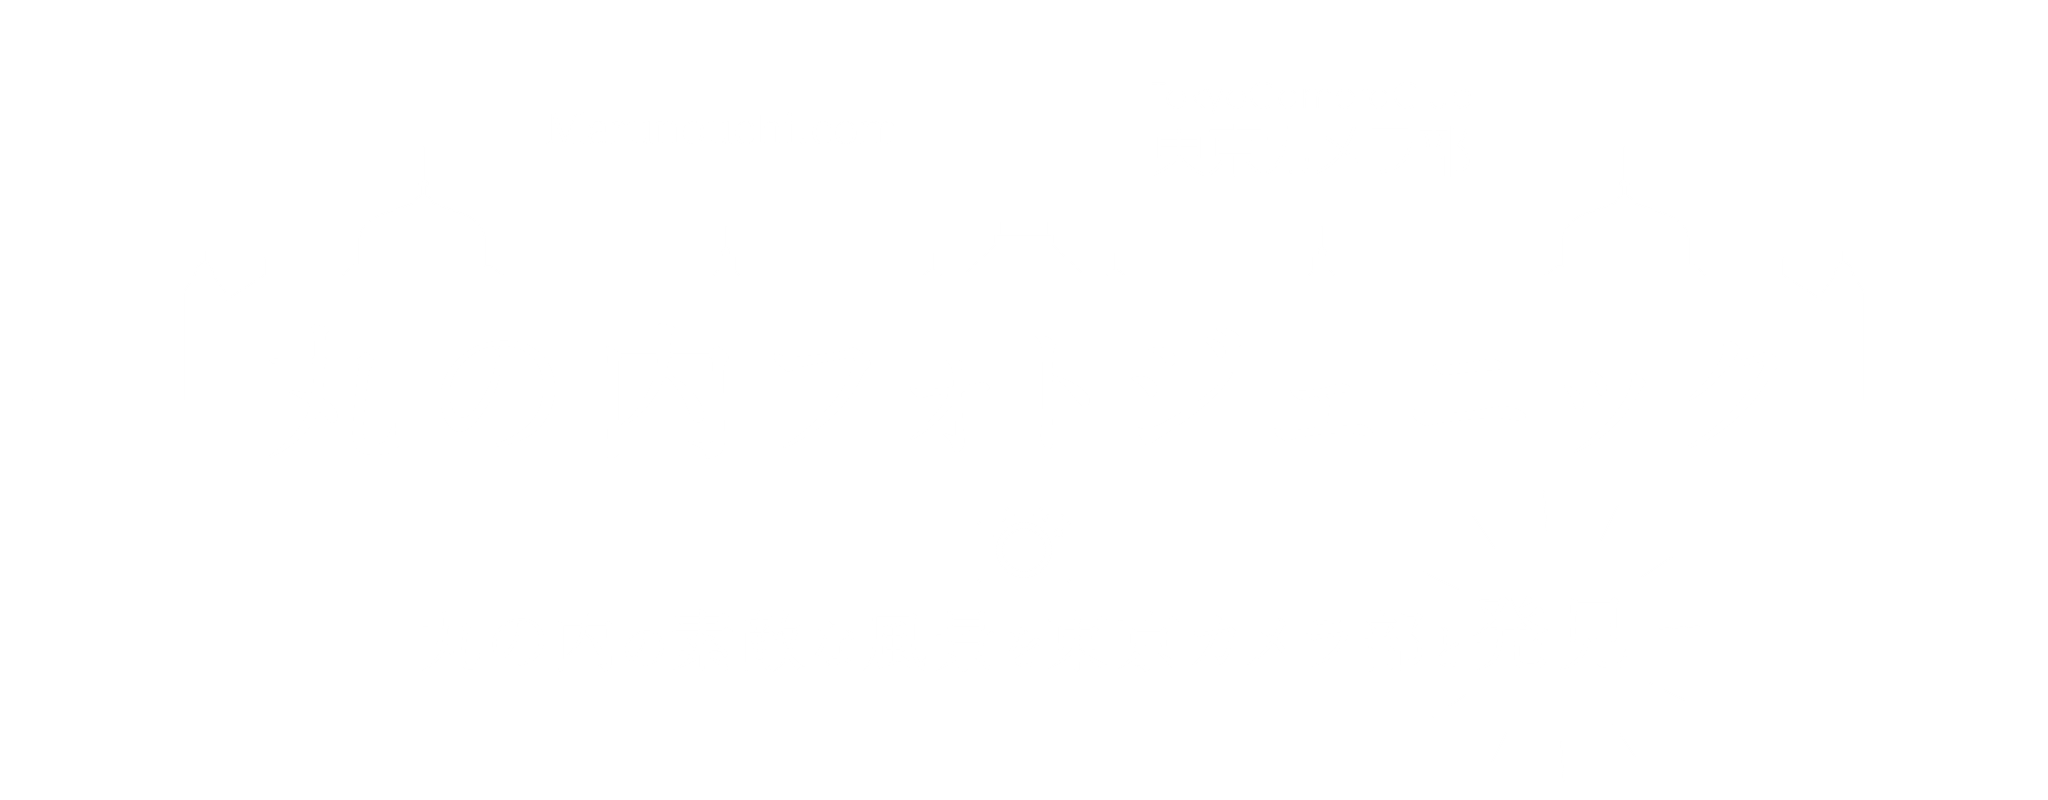 마루 노우치 포토 제닉 마루 노우치의 멋진 풍경을 도쿄 카메라 부와 발견